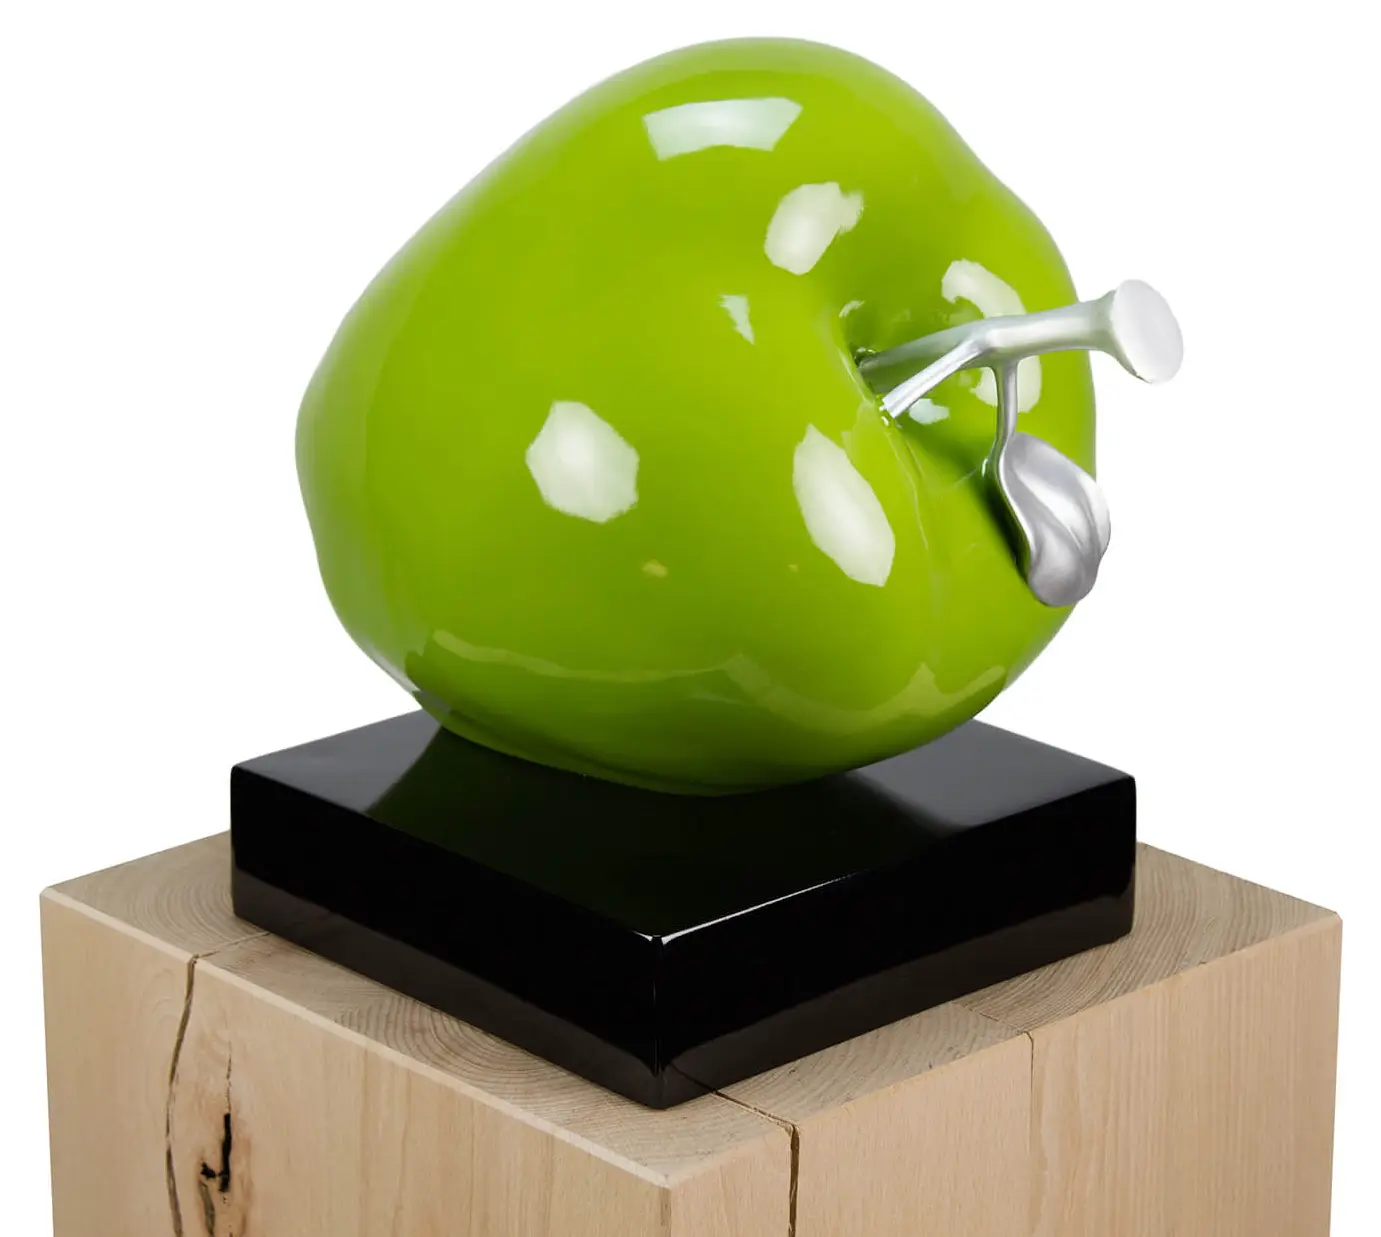 An Apple Skulptur a Day